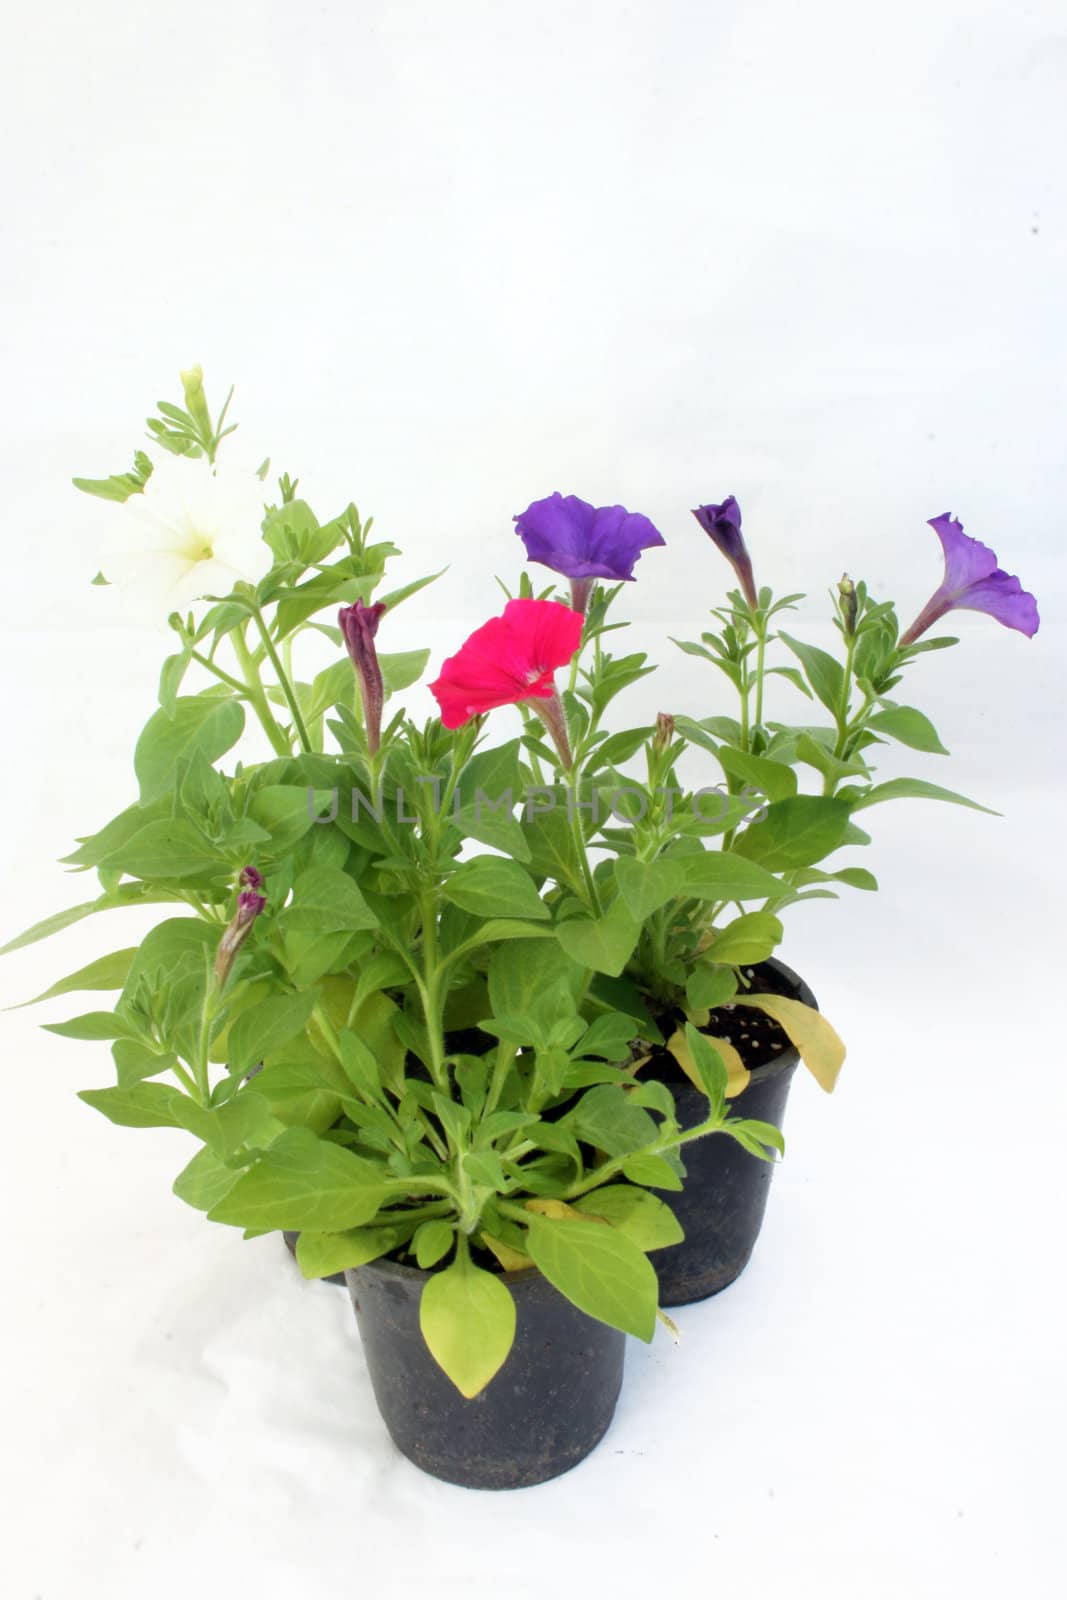 Nursery flowers in pots







Nursery flower in a pot